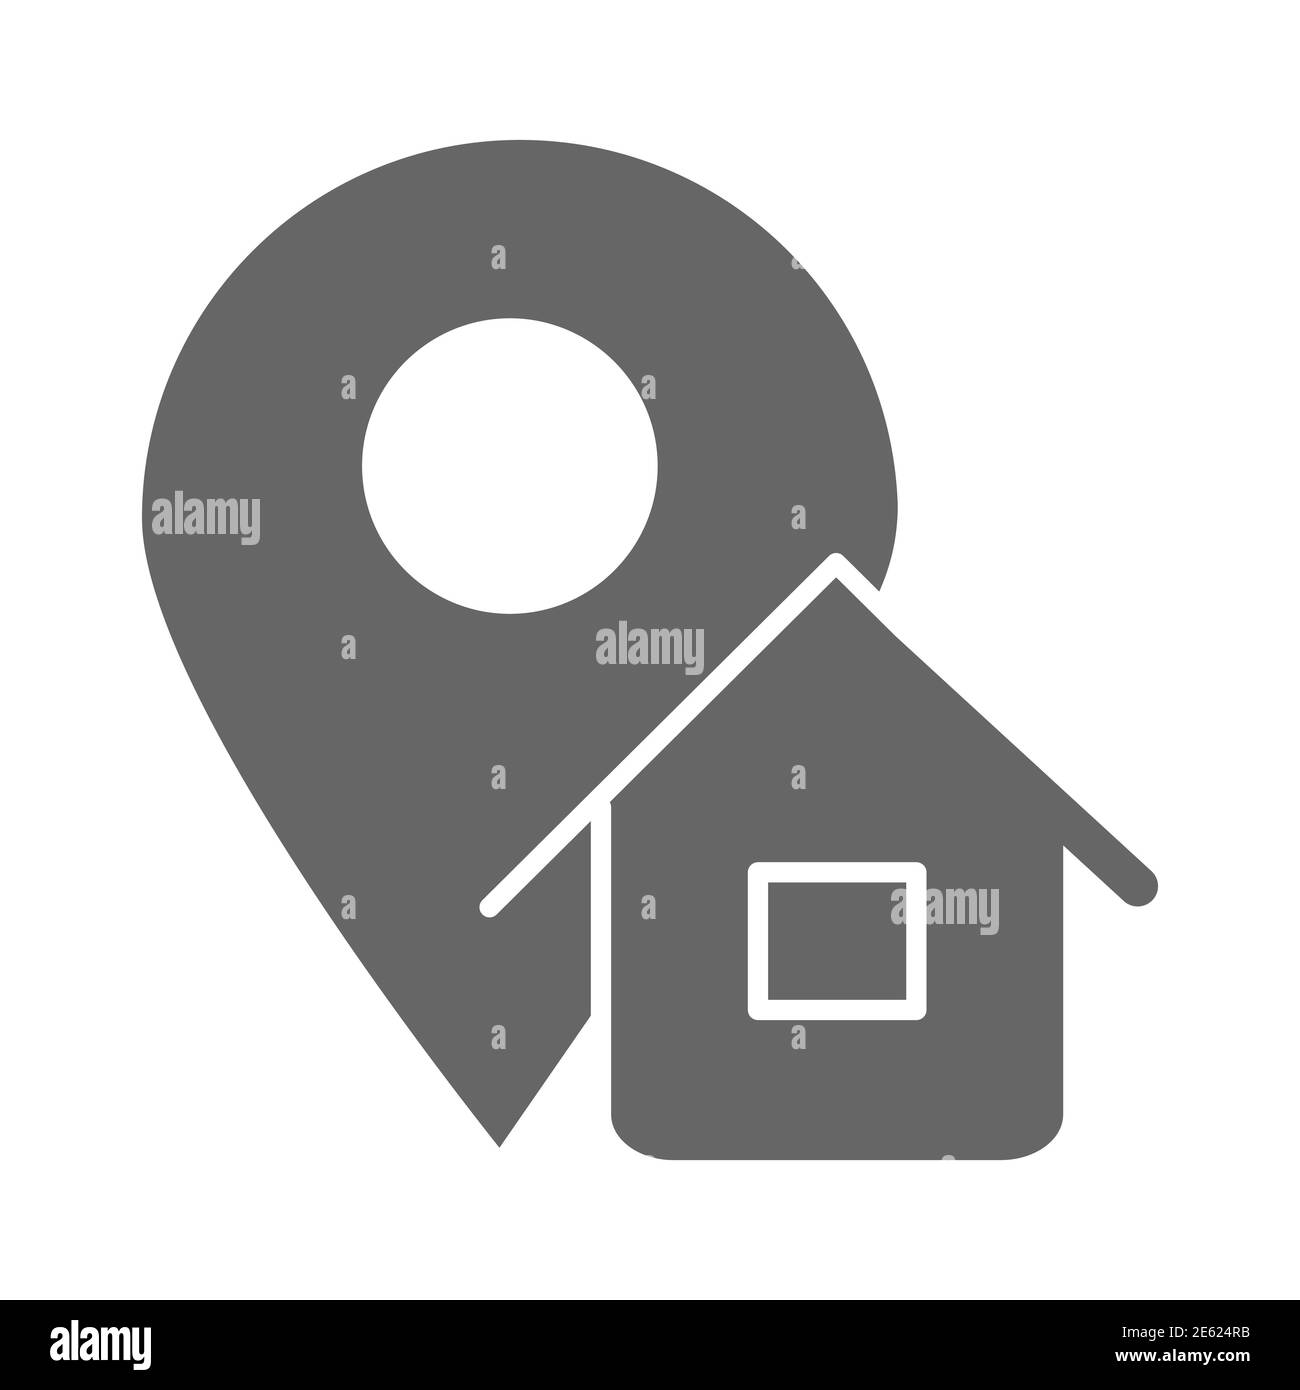 Icona del solido dell'indirizzo, simbolo di logistica, puntatore della mappa con il simbolo del vettore della casa su sfondo bianco, icona della posizione dell'indirizzo di casa in stile glifo per dispositivi mobili Illustrazione Vettoriale